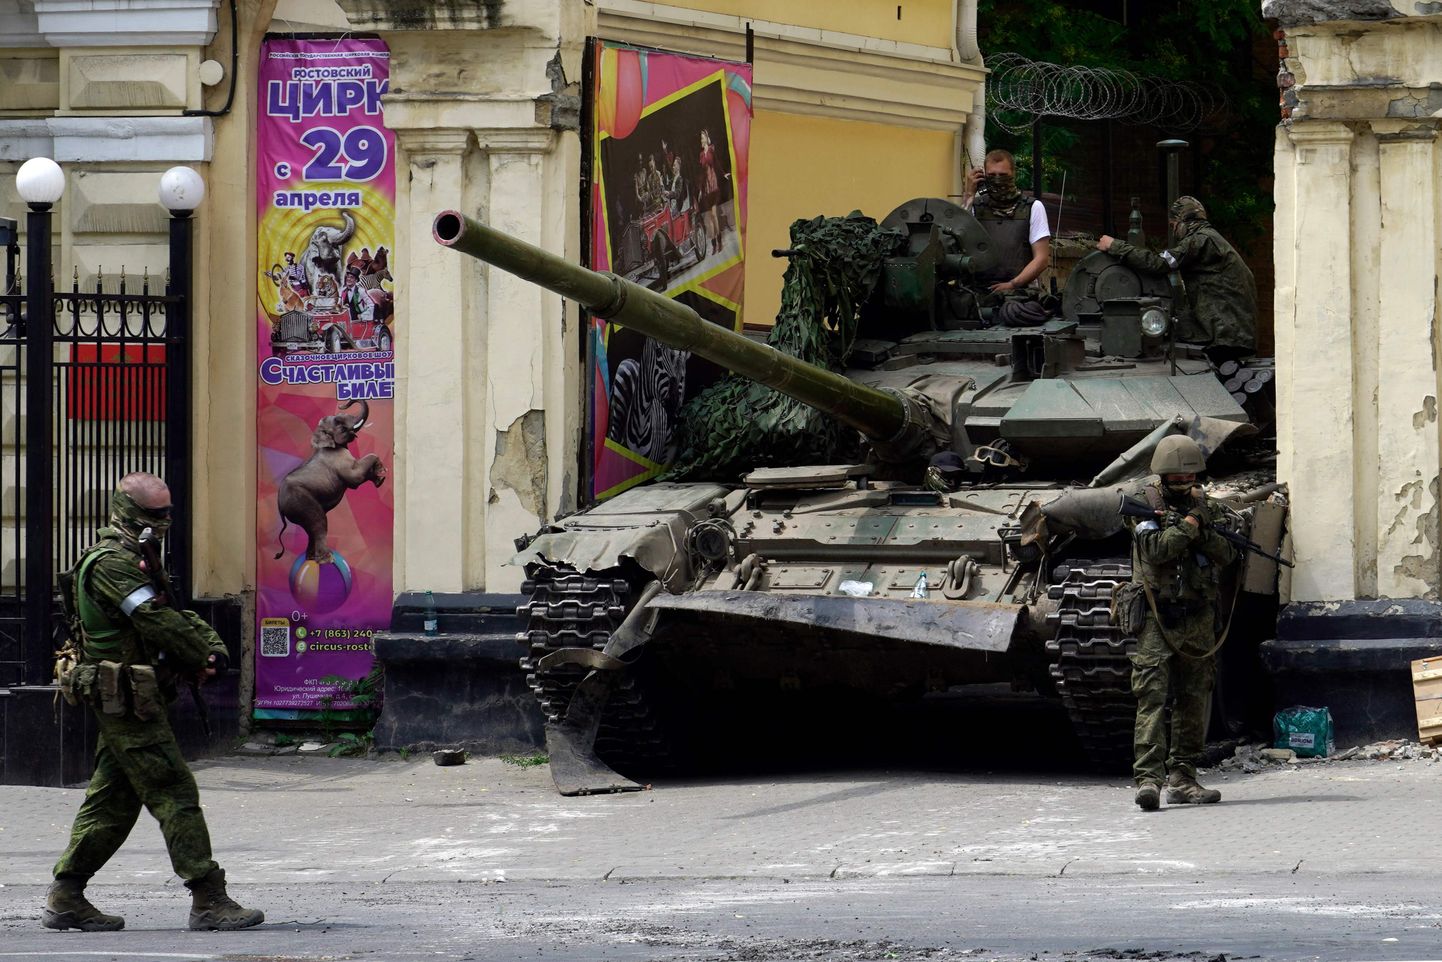 Wagneri variväe käsutuses olnud tank jäi Rostovis Doni ääres kinni tsirkuse väravate vahele. Samamoodi takerdus kogu suurejooneliselt alustatud avantüür. (Photo by STRINGER / AFP)